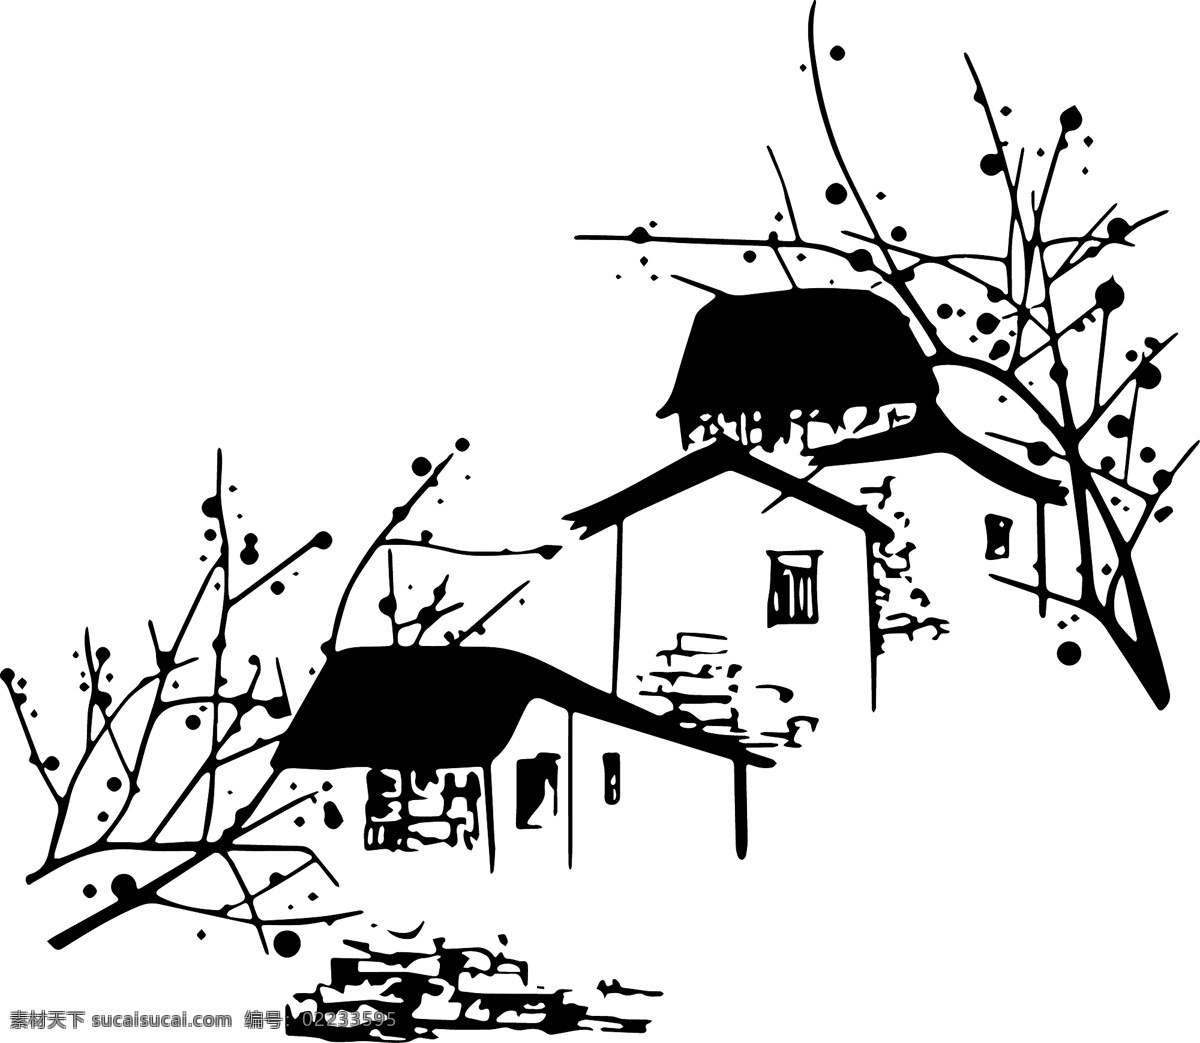 水墨房子图片 矢量水墨房子 黑色 矢量 水墨 房子图 ai格式 水墨风格 农家小院 自然景观 建筑园林